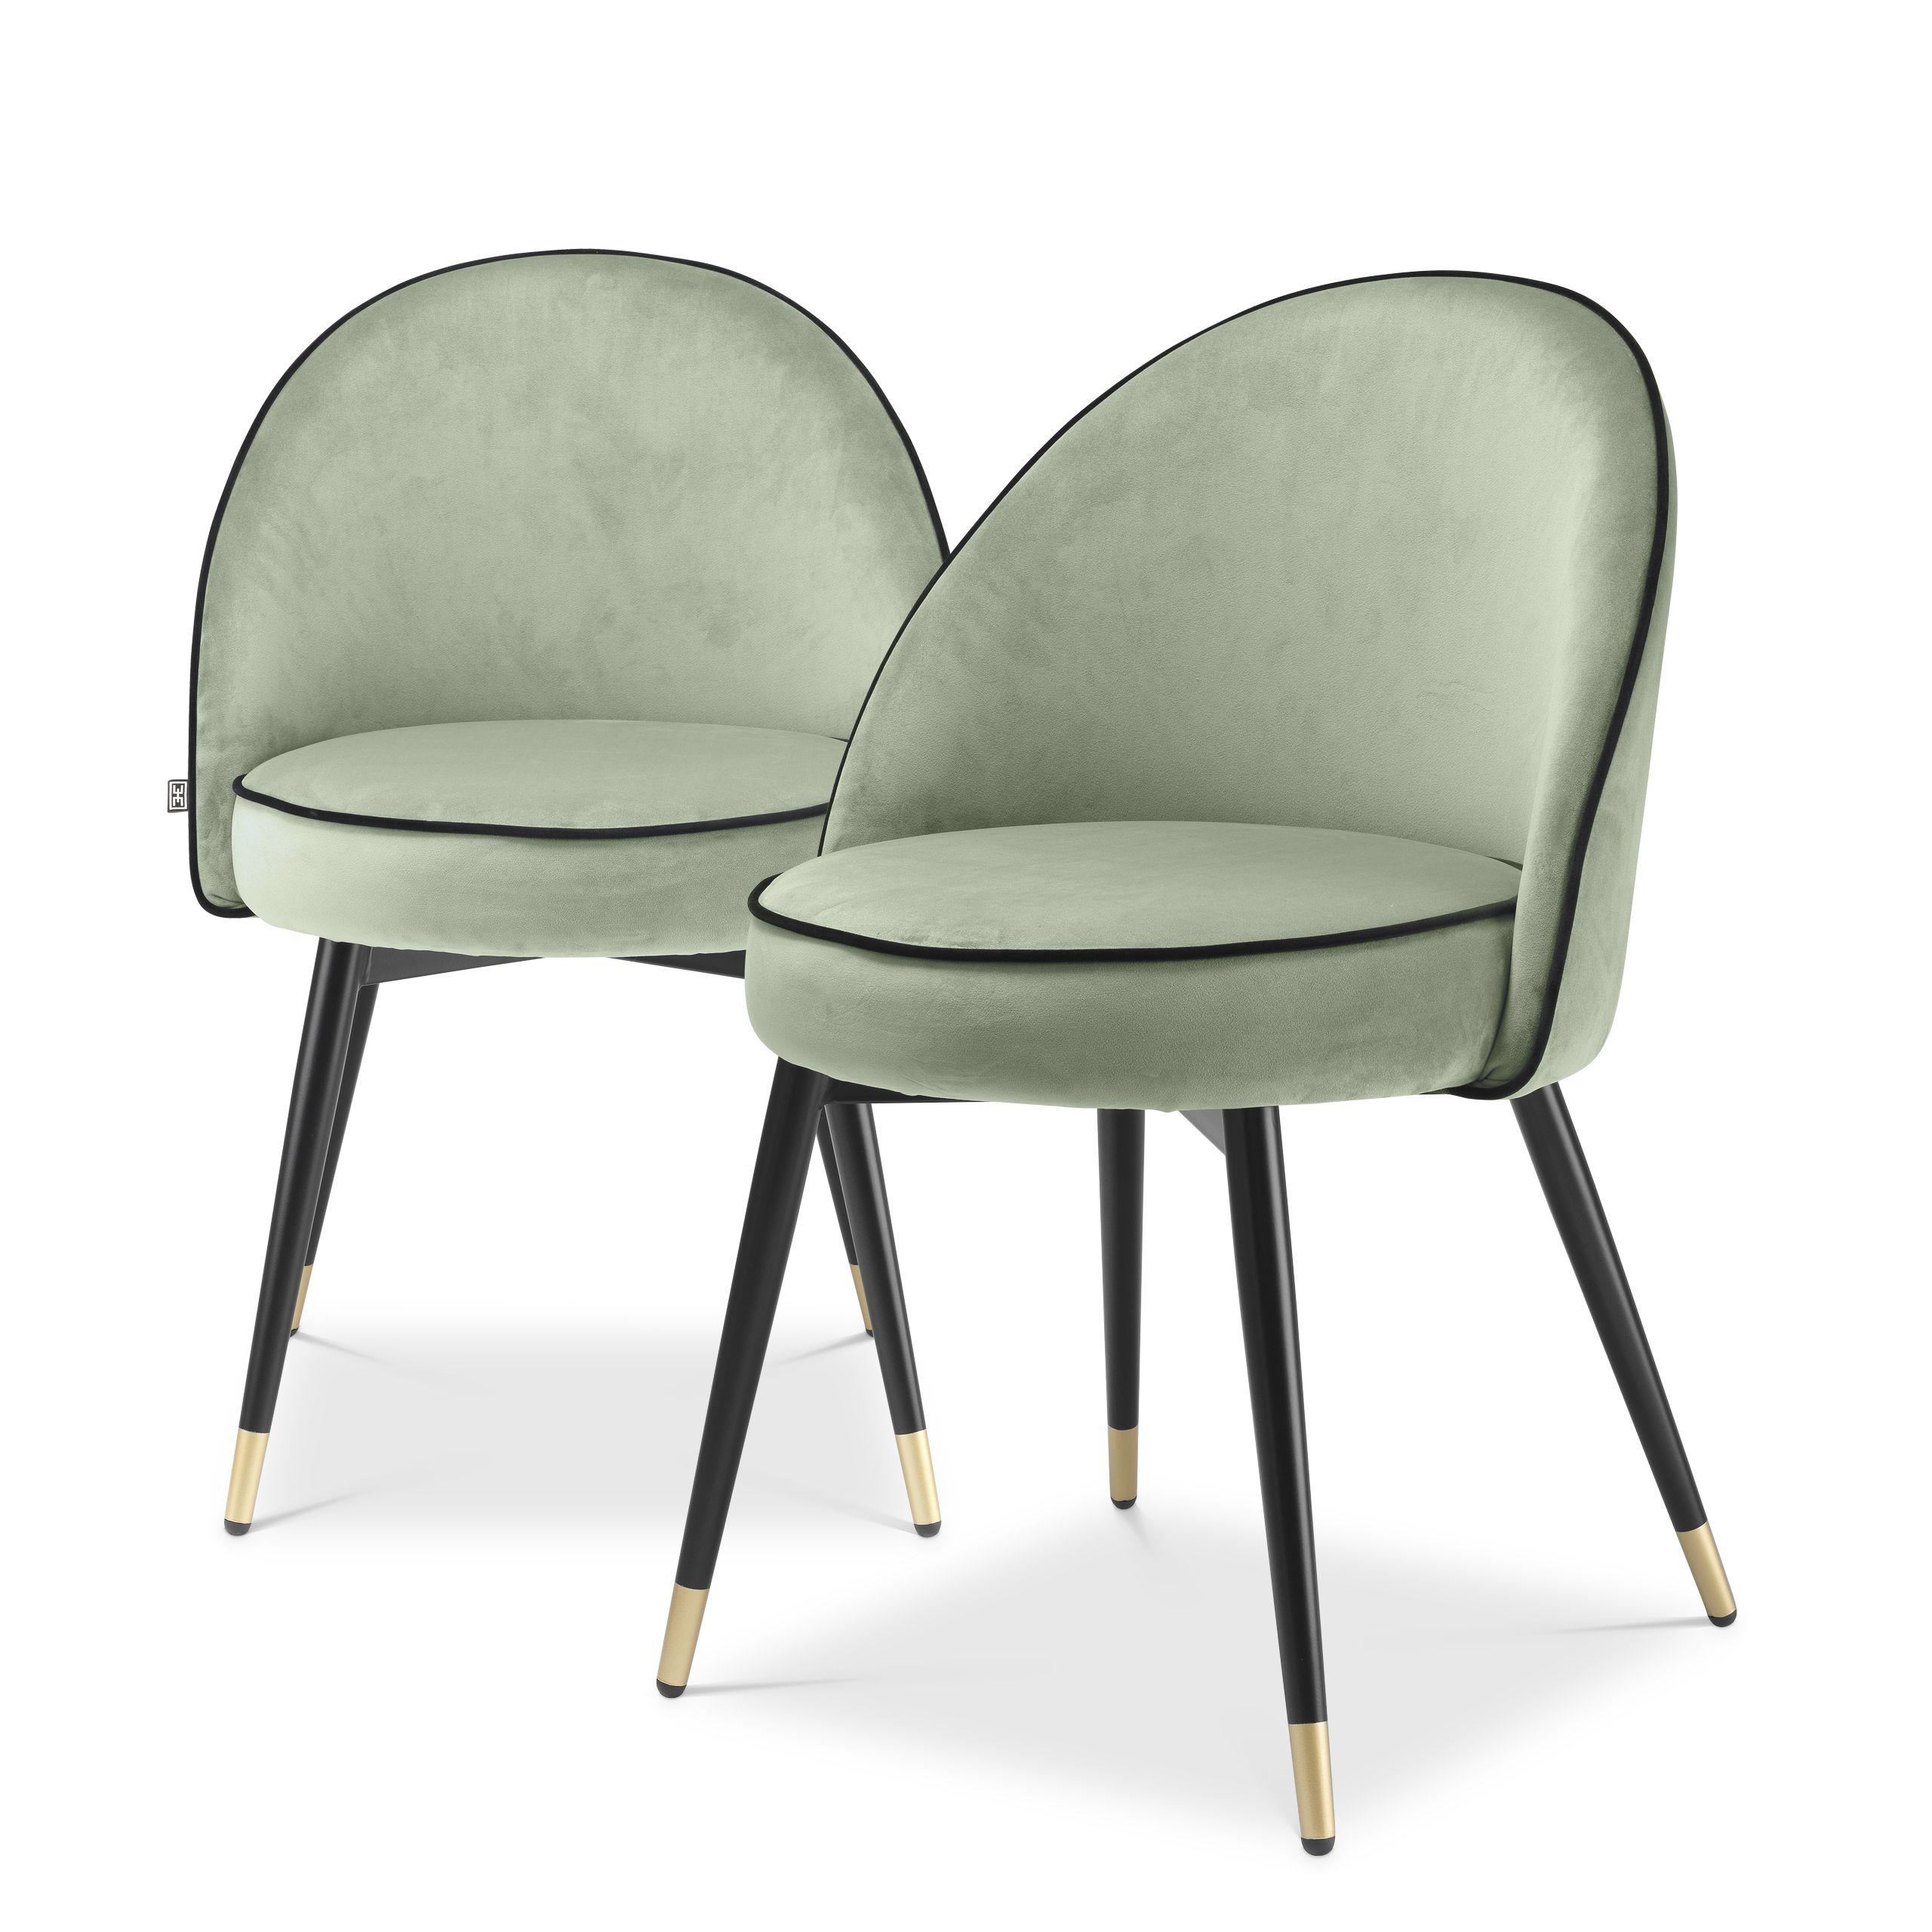 Купить Стул без подлокотника Dining Chair Cooper set of 2. в интернет-магазине roooms.ru